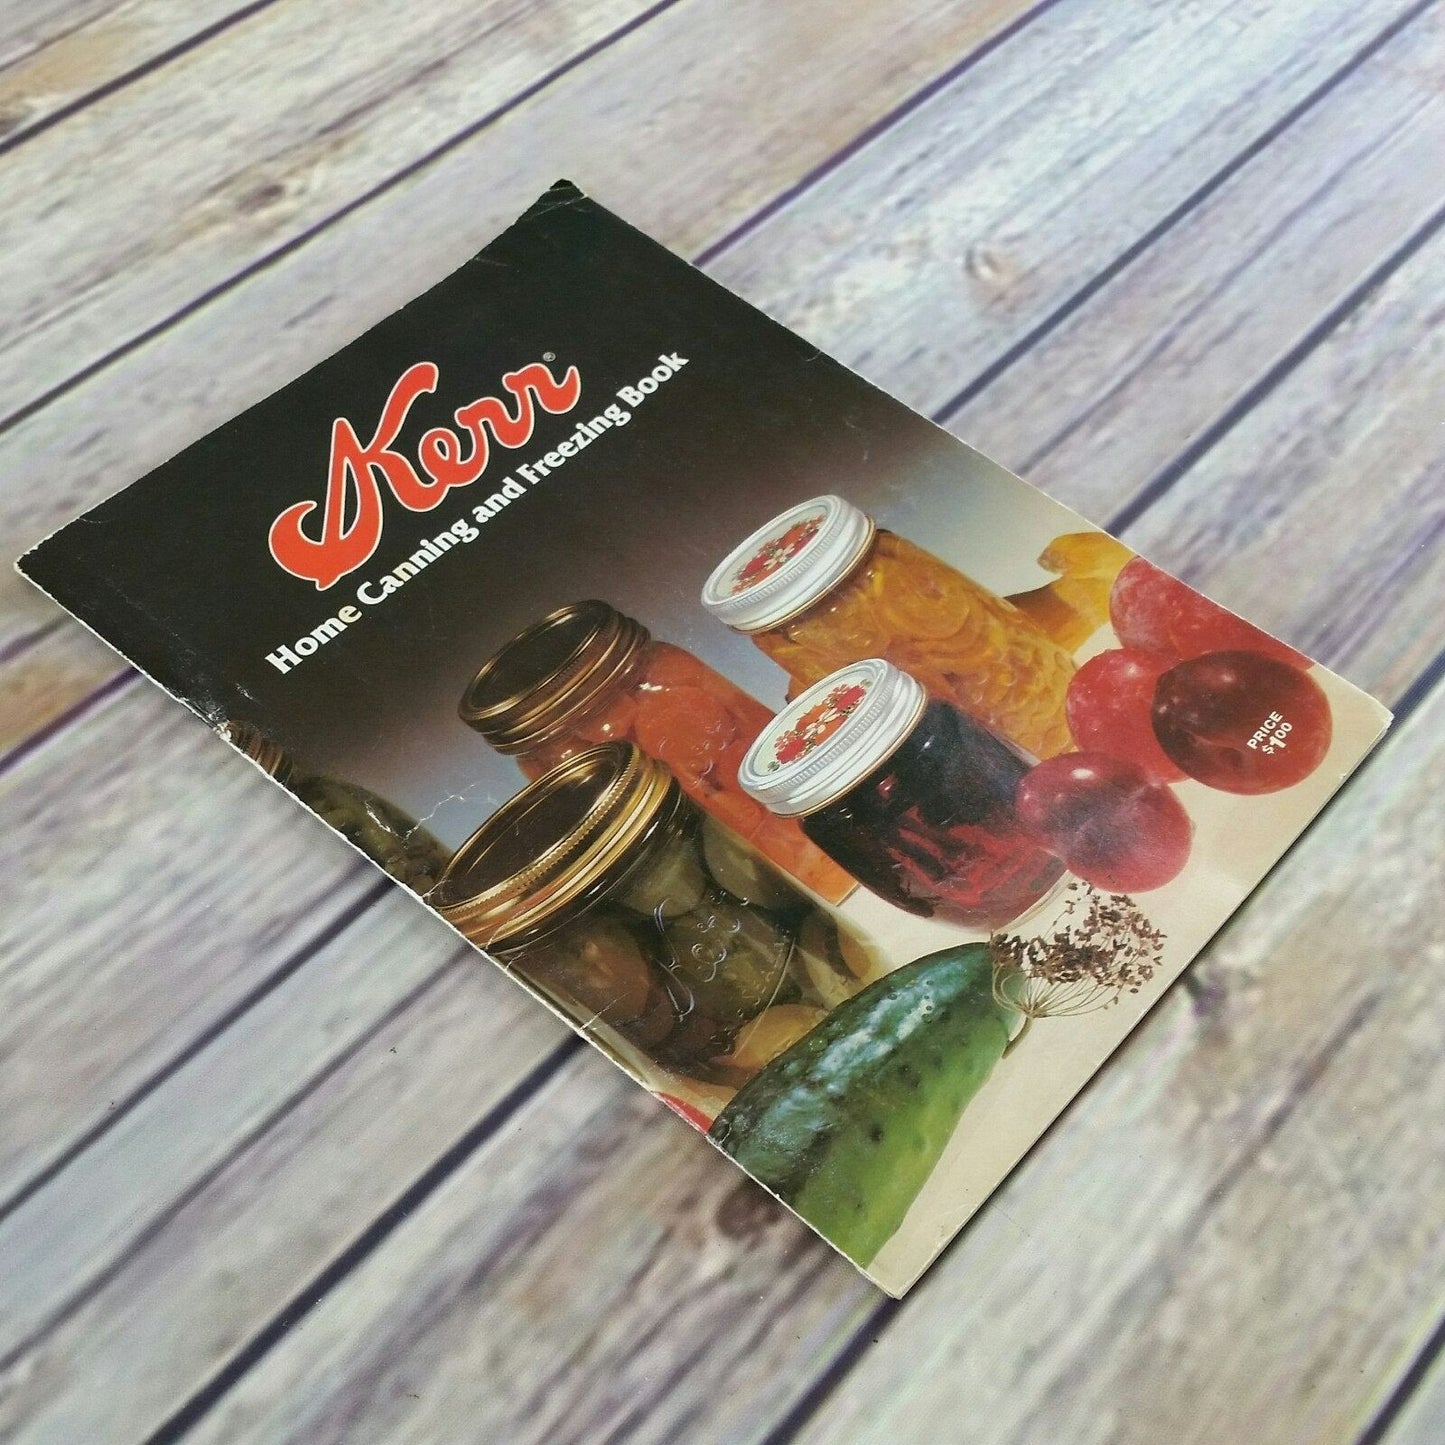 Vintage Kerr Home Canning and Freezing Cookbook Recipes Booklet 1981 Paperback Pamphlet